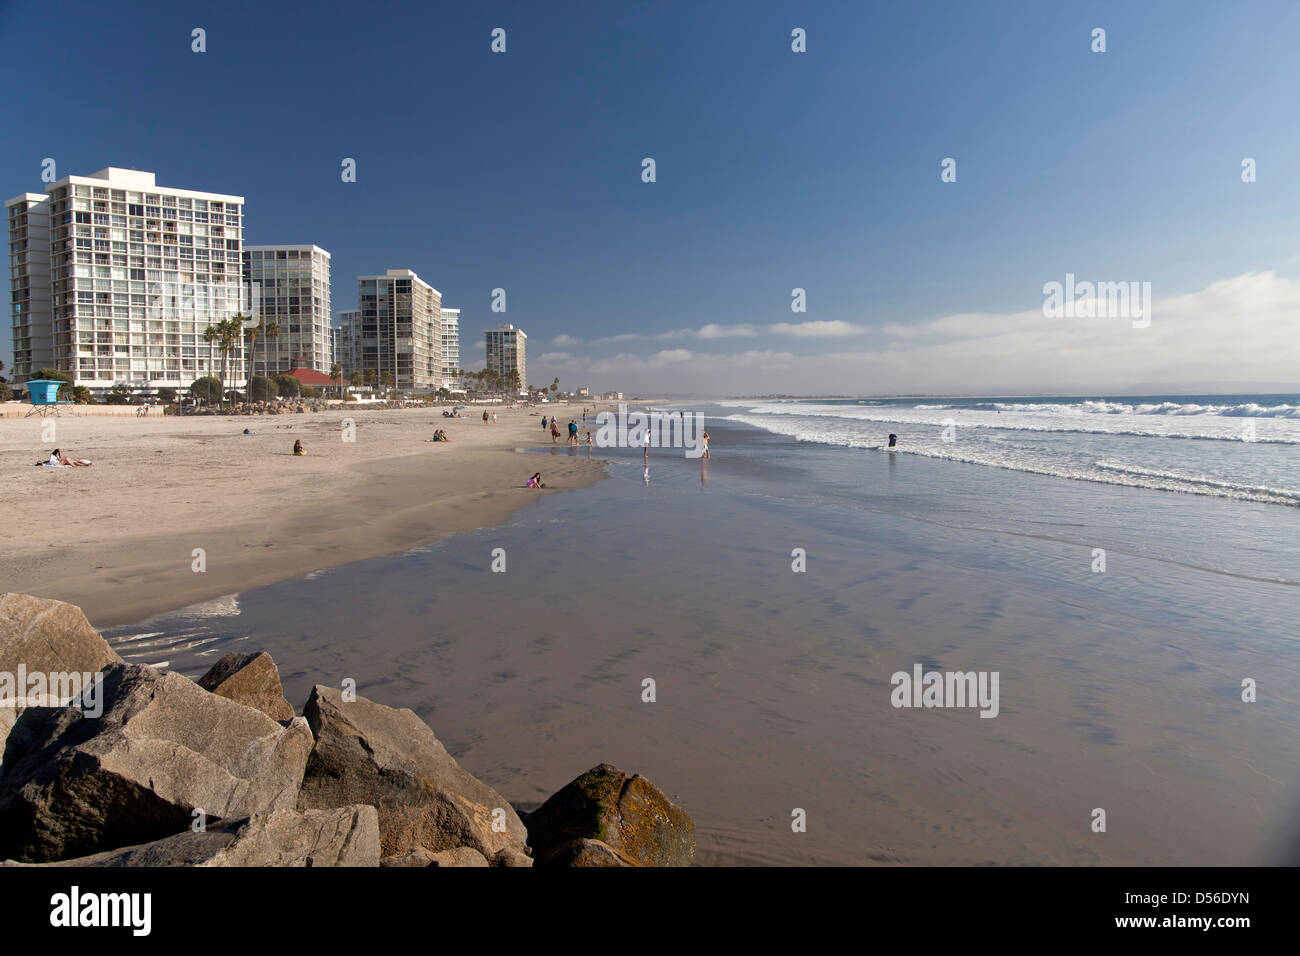 Mehrfamilienhäuser am Strand auf Coronado Island, San Diego, Kalifornien, Vereinigte Staaten von Amerika, USA Stockfoto